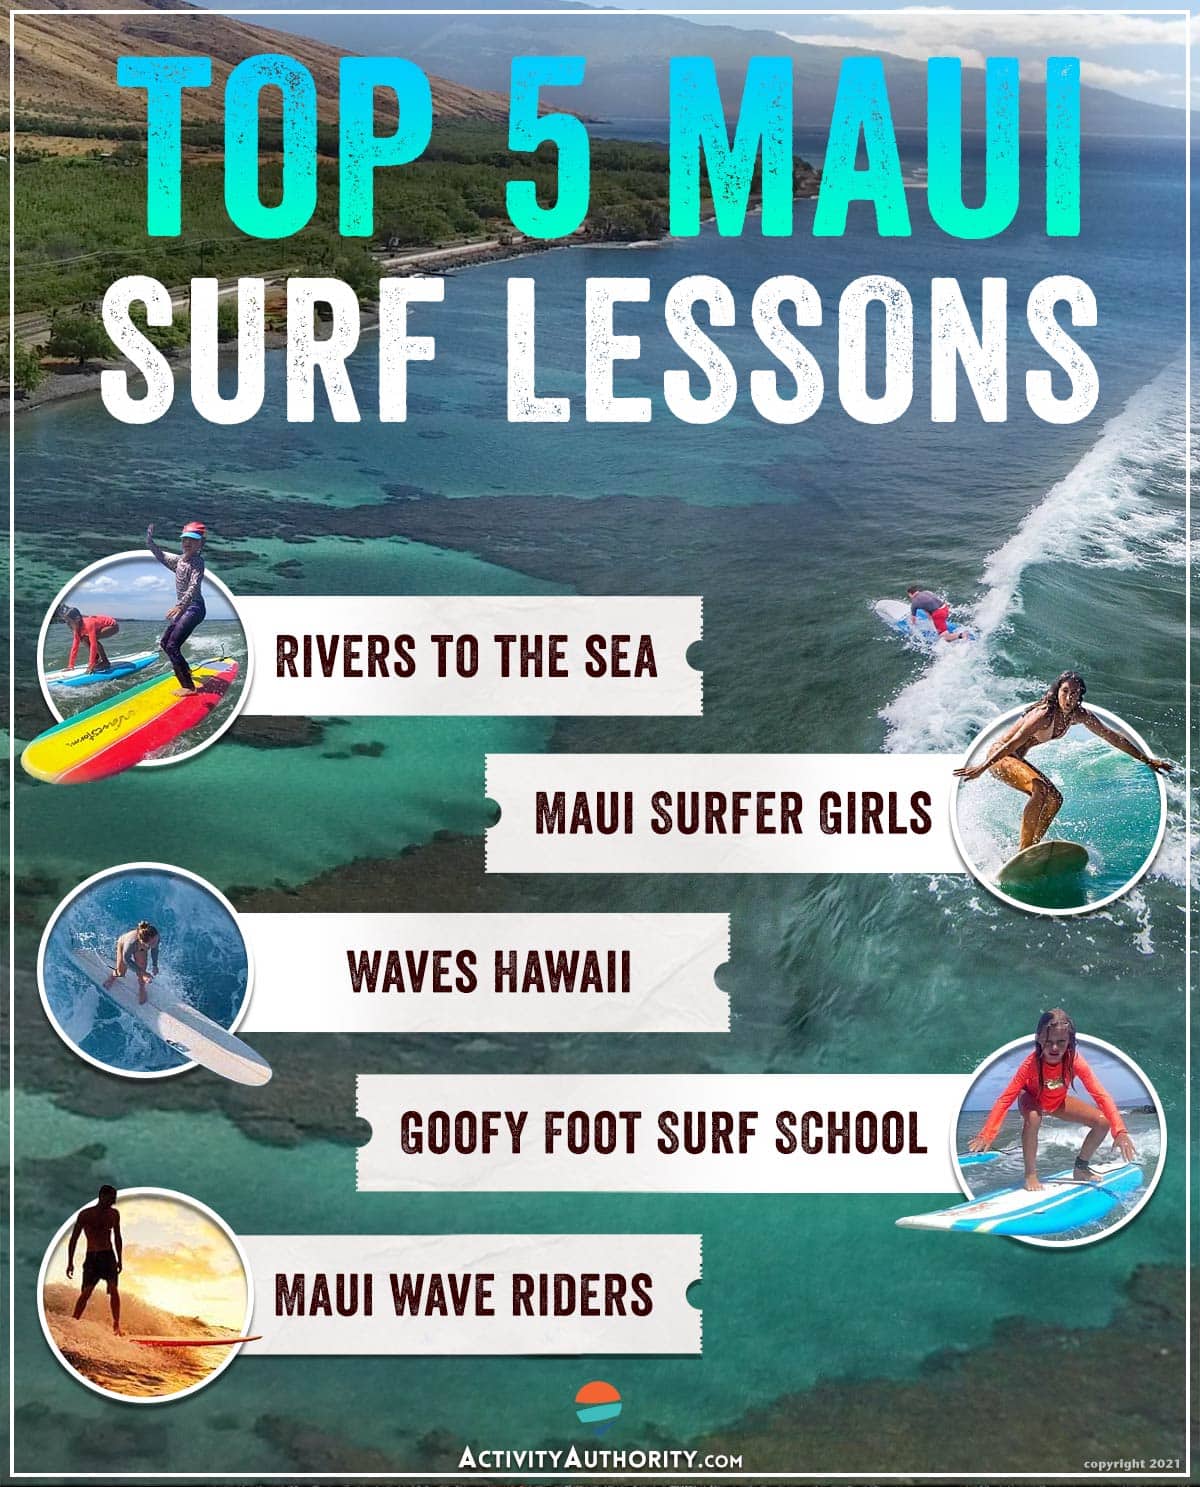 Top Maui surf lessons